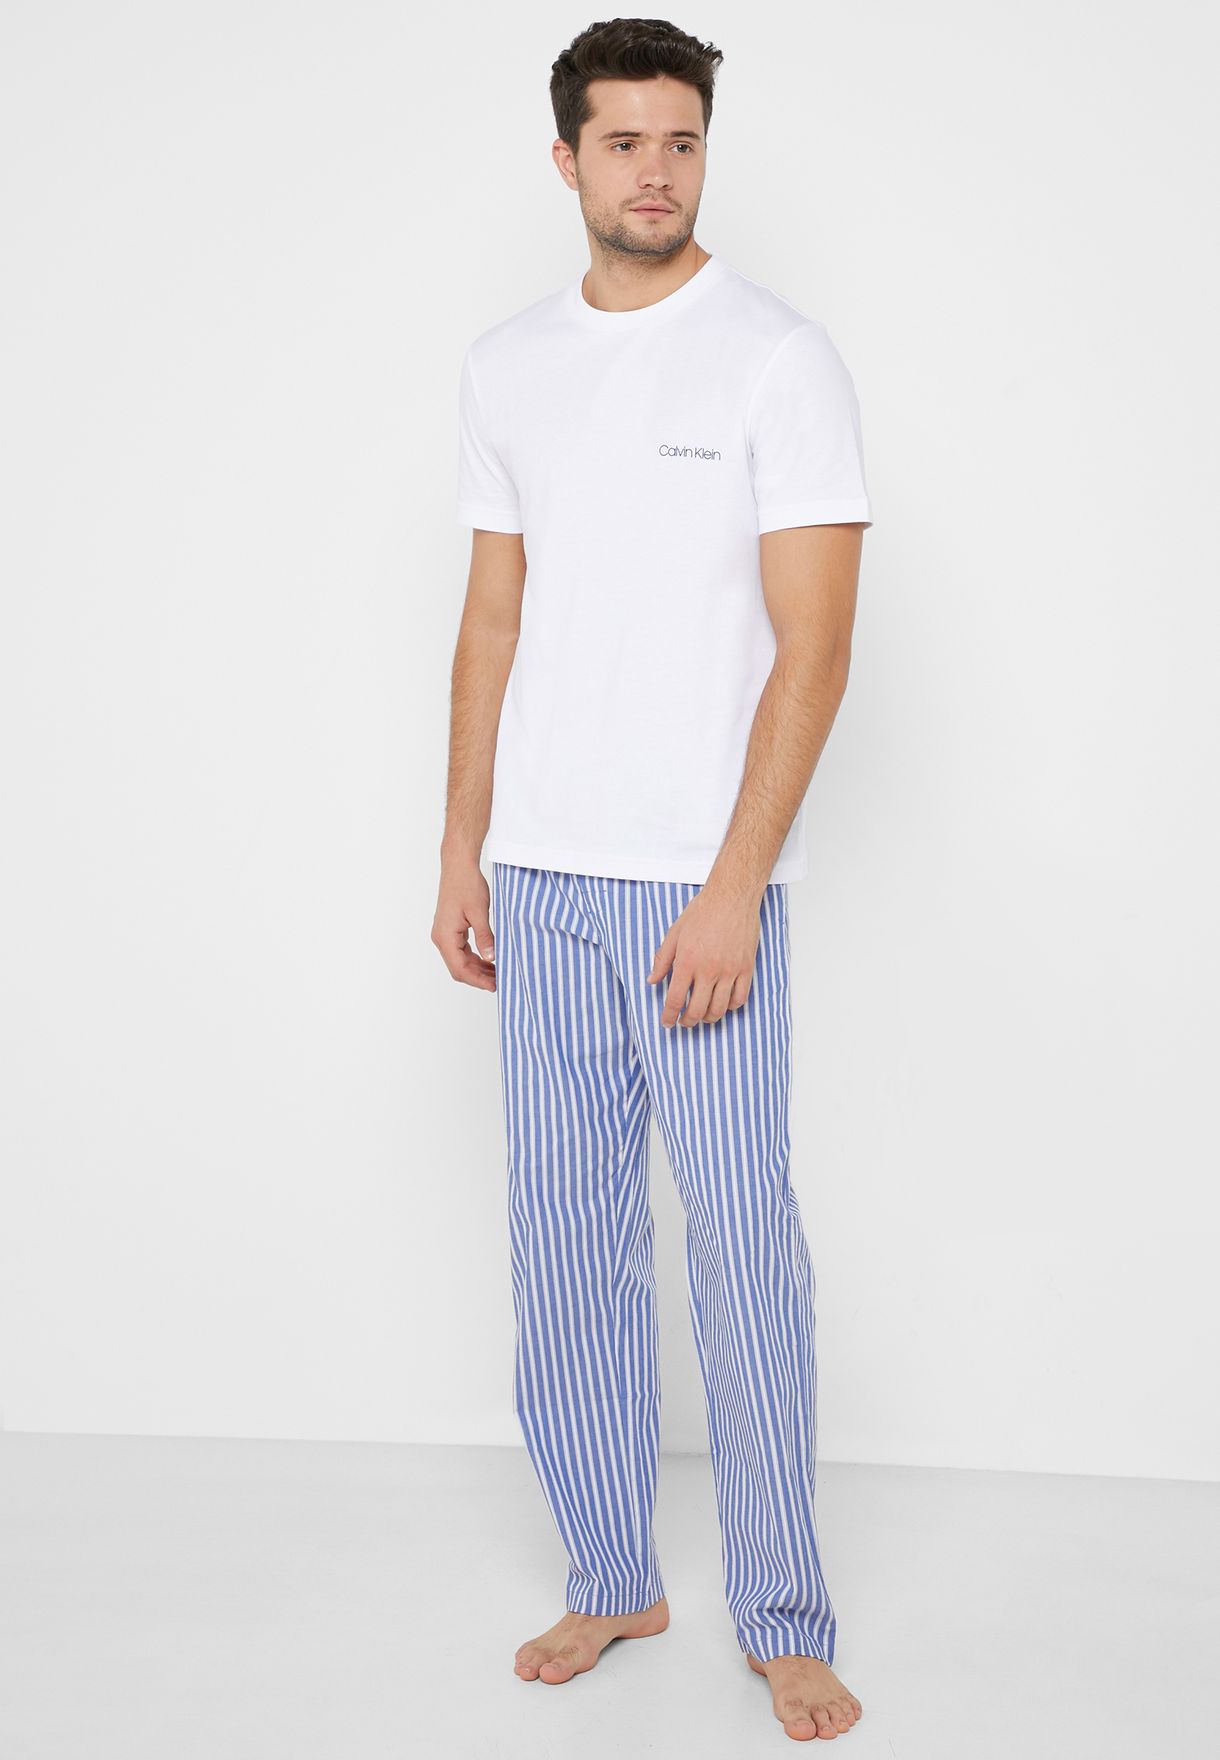 Buy Calvin Klein prints Pajama for Men in Riyadh, Jeddah